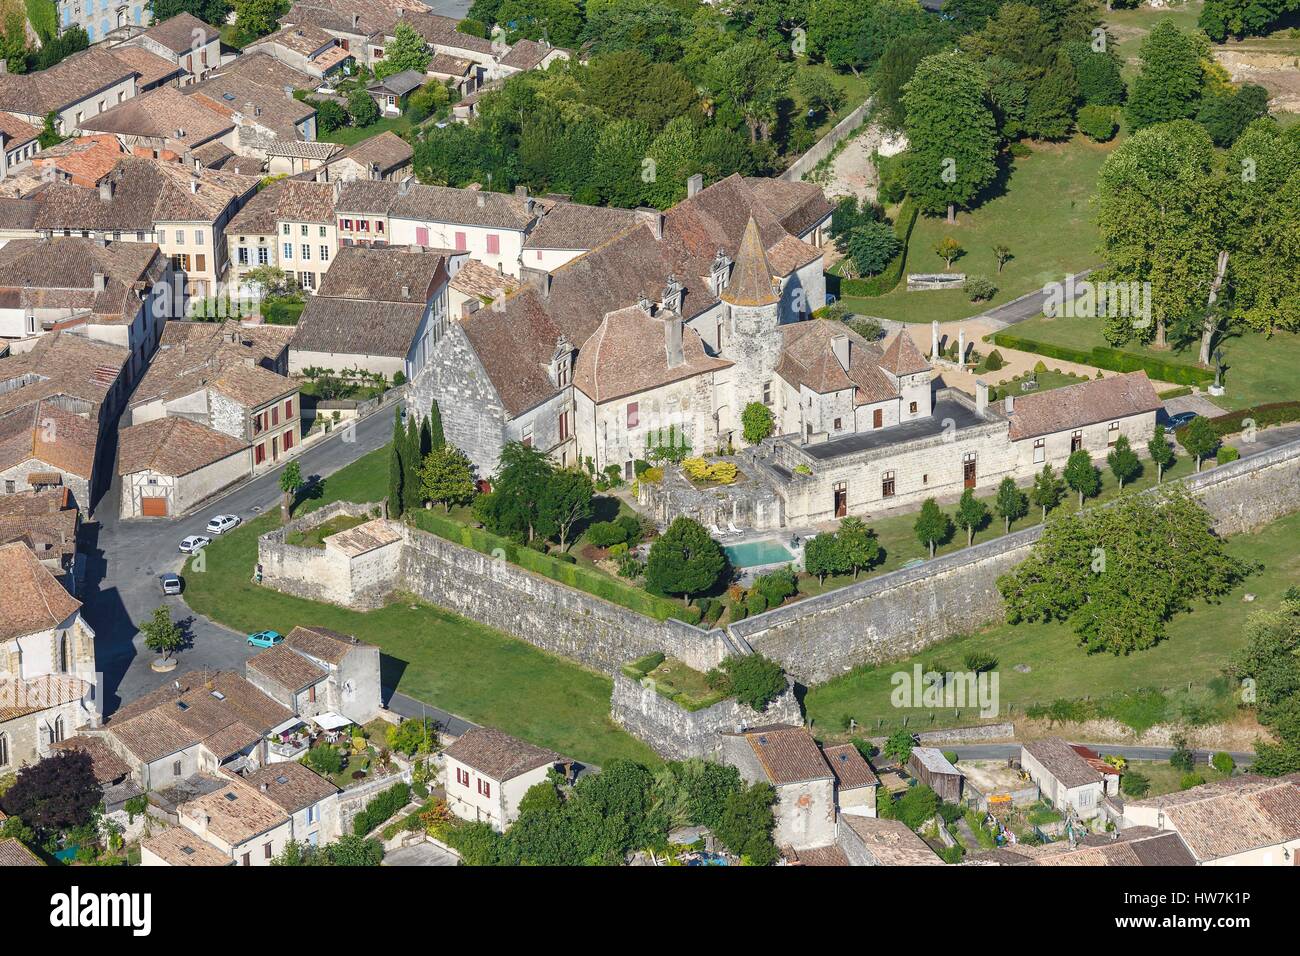 France, Lot et Garonne, Lauzun, the castle (aerial view) Stock Photo